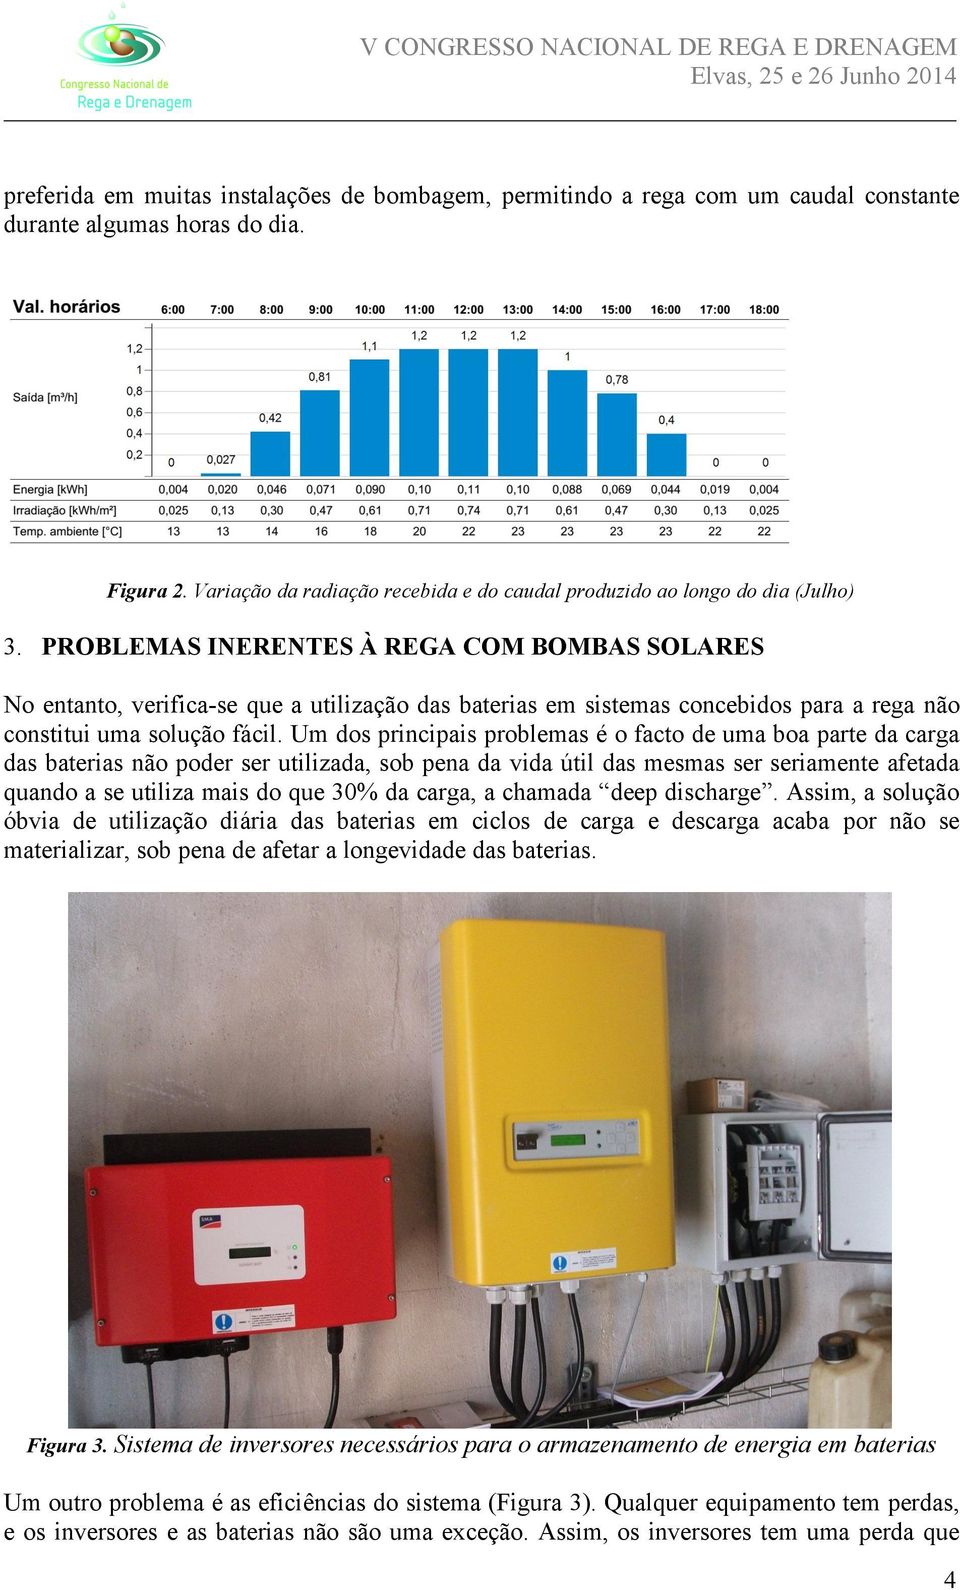 PROBLEMAS INERENTES À REGA COM BOMBAS SOLARES No entanto, verifica-se que a utilização das baterias em sistemas concebidos para a rega não constitui uma solução fácil.